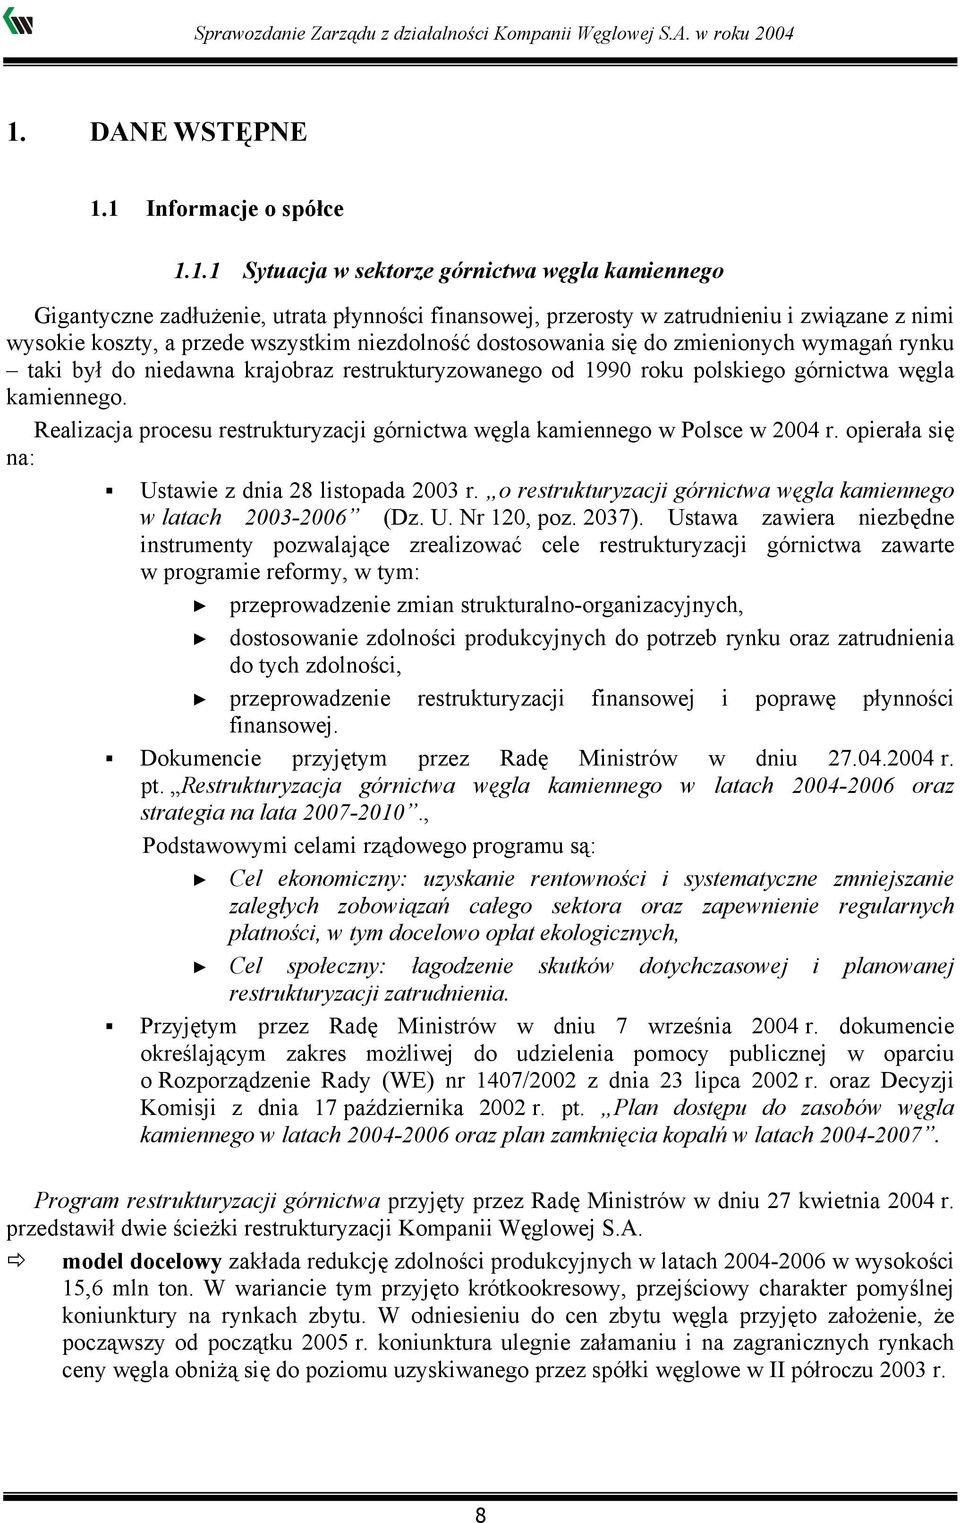 Realizacja procesu restrukturyzacji górnictwa węgla kamiennego w Polsce w 2004 r. opierała się na: Ustawie z dnia 28 listopada 2003 r.